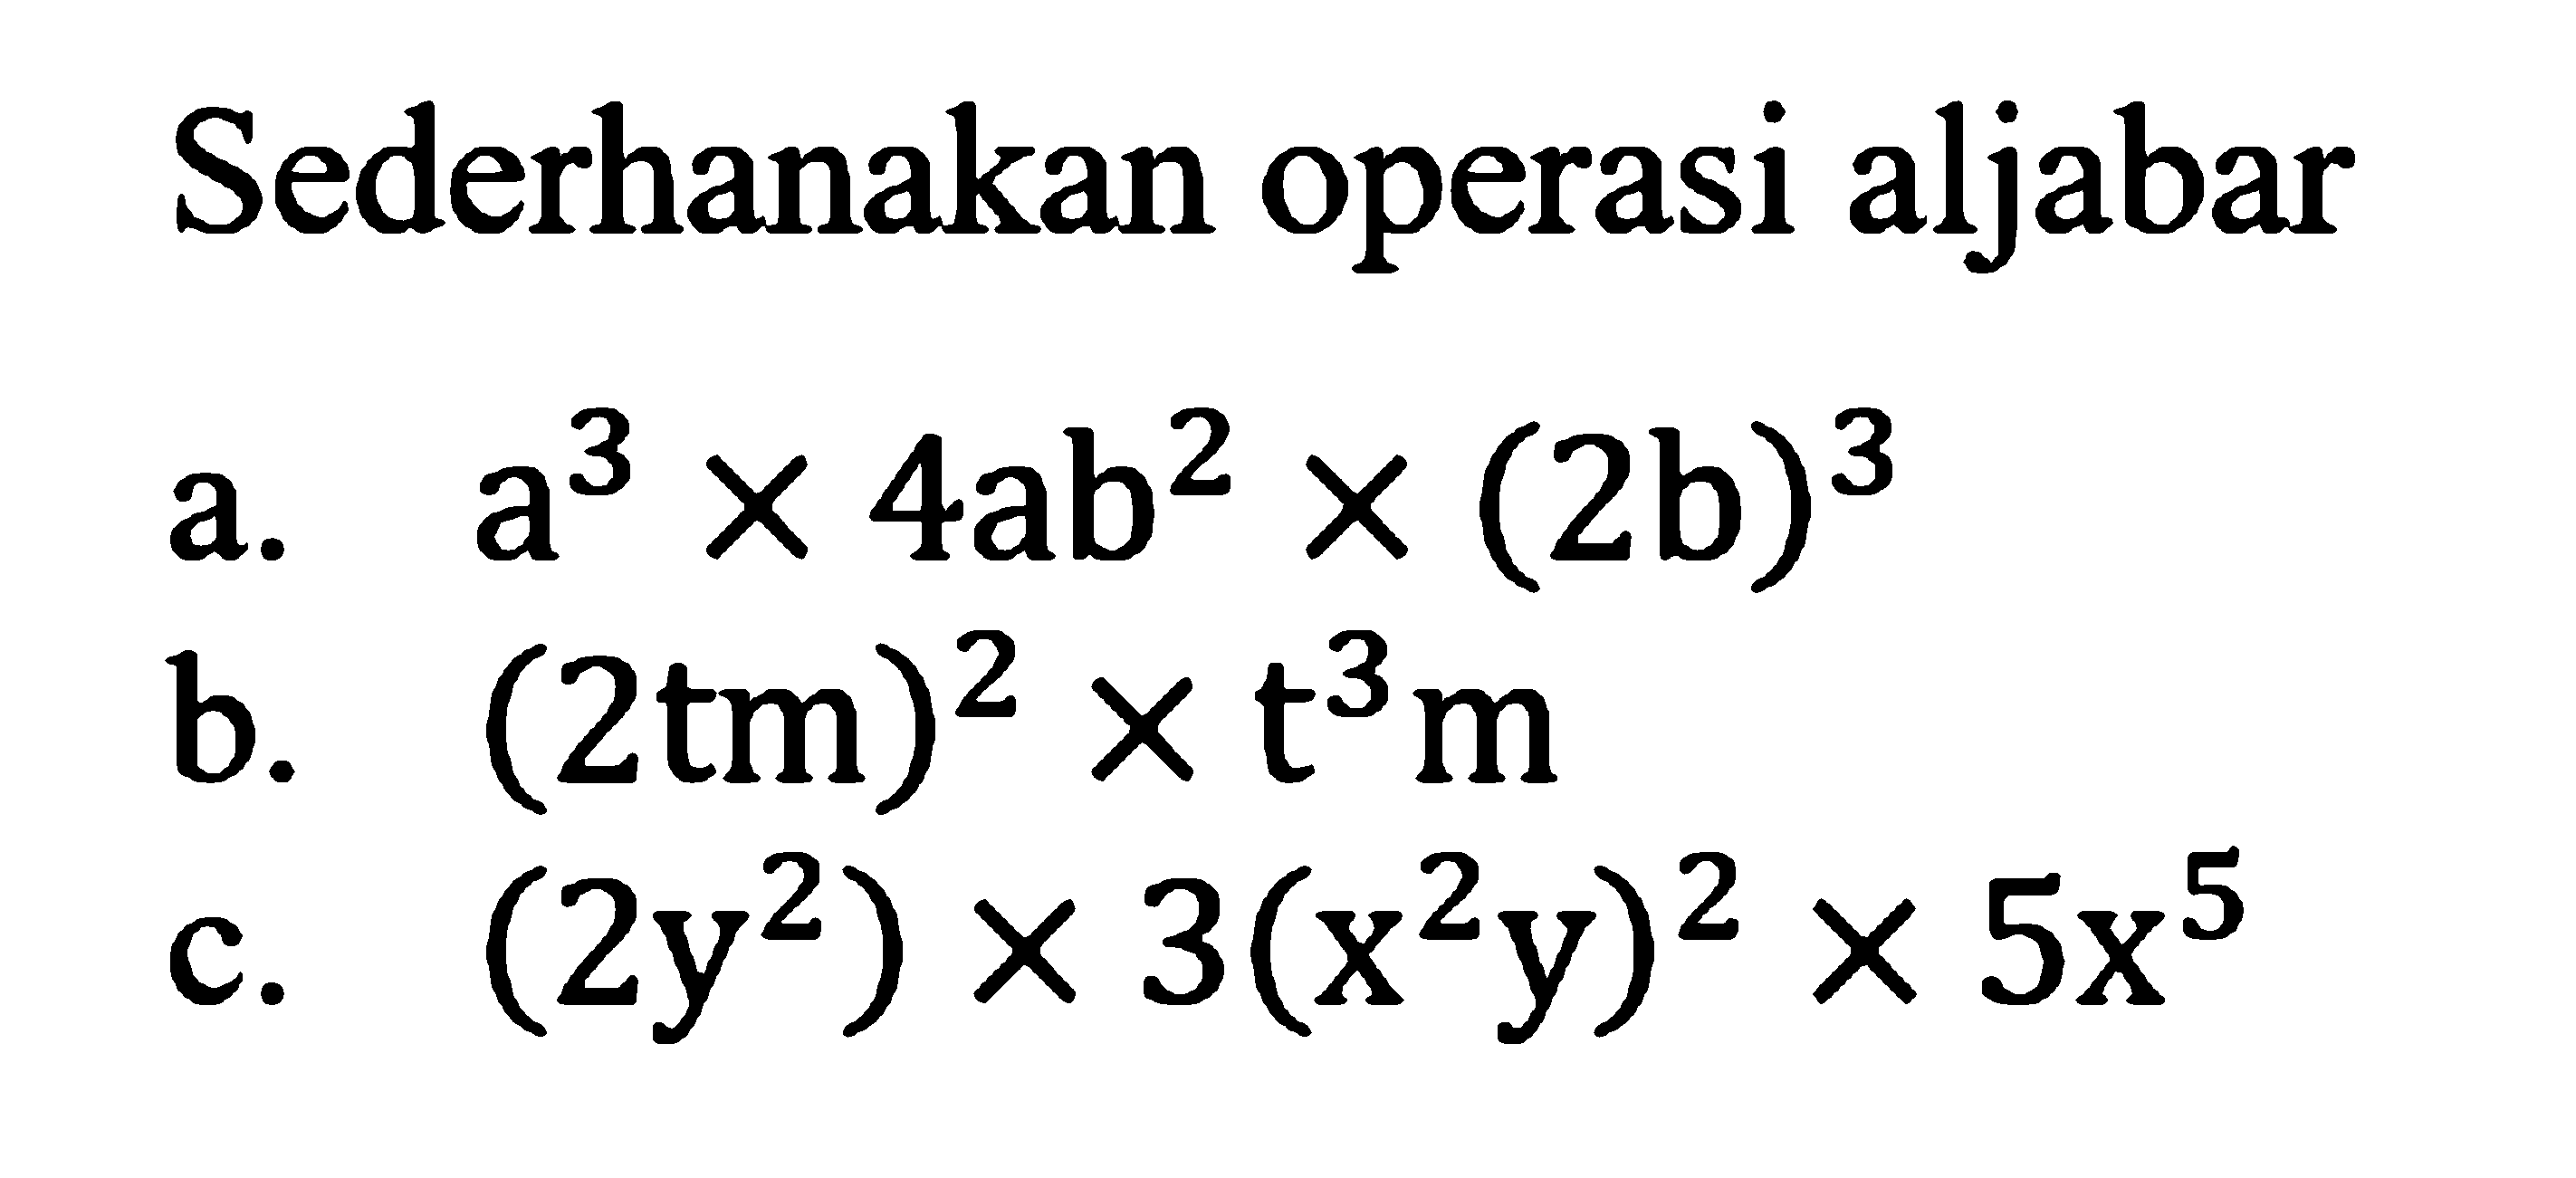 Sederhanakan operasi aljabar a. a^3 x 4ab^2 x (2b)^3 b. (2tm)^2 x t^3 m c. (2y^2) x 3(x^2 y)^2 x 5x^5